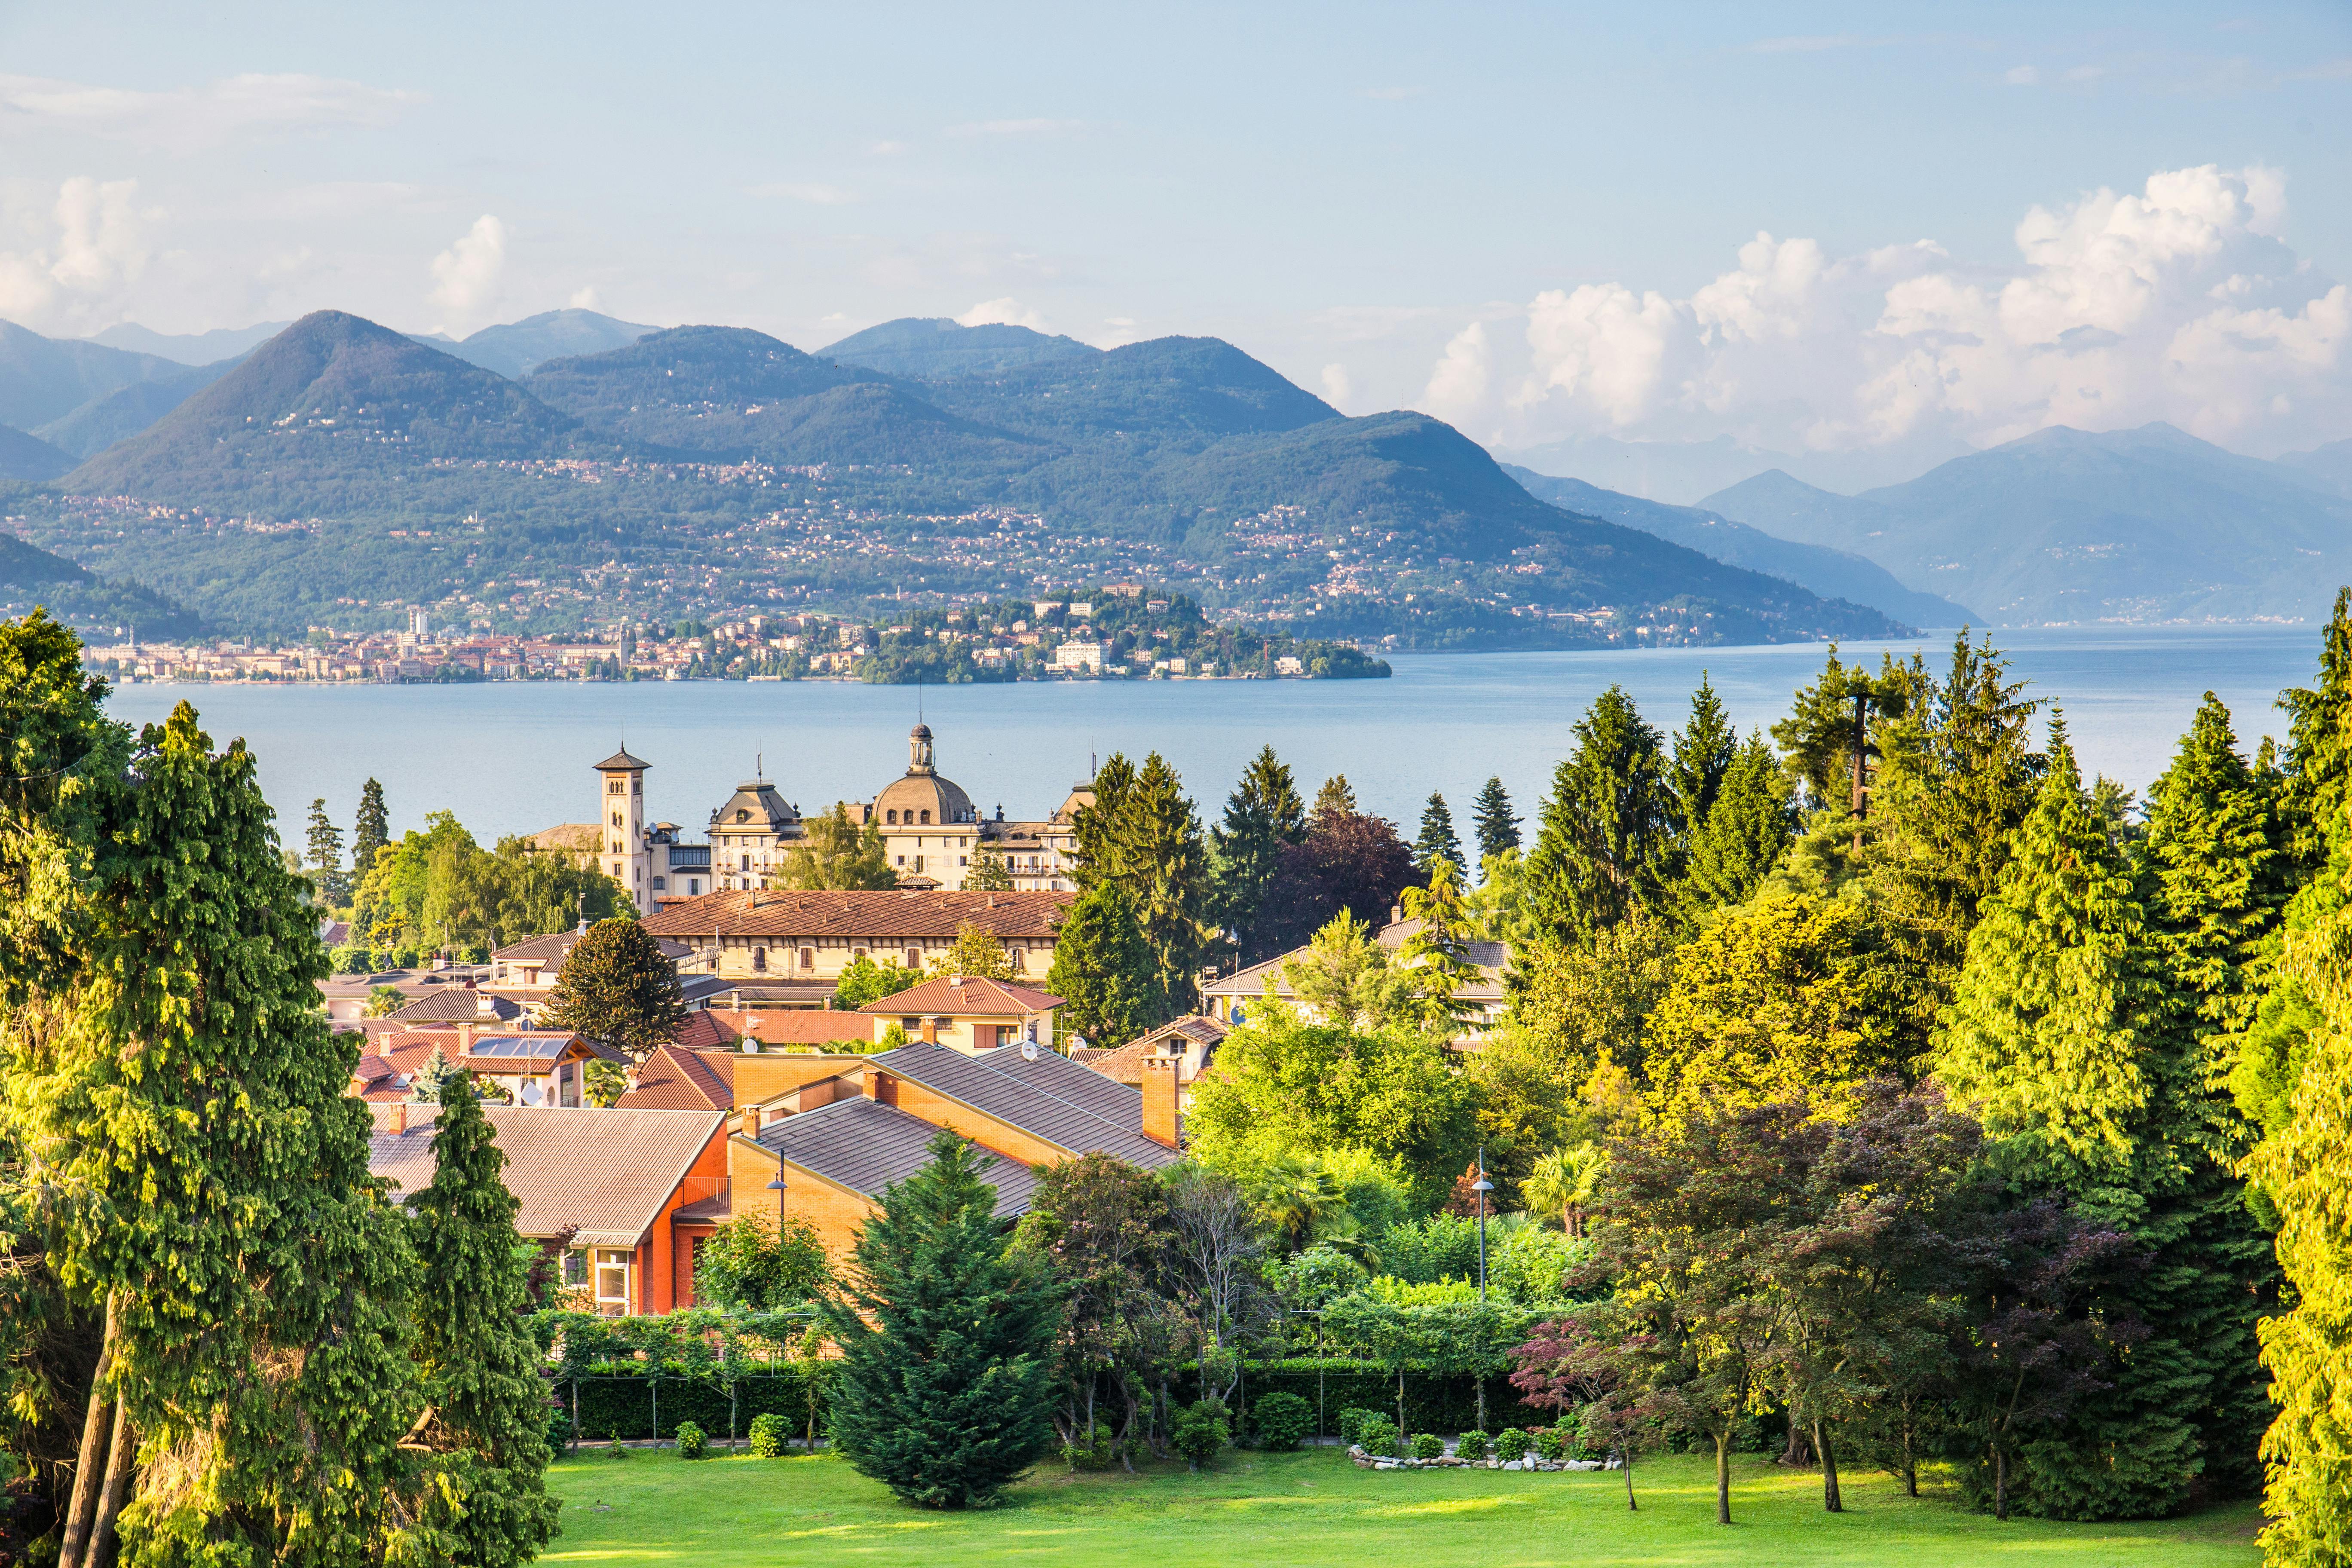 Lake Maggiore and Borromean Islands from Stresa